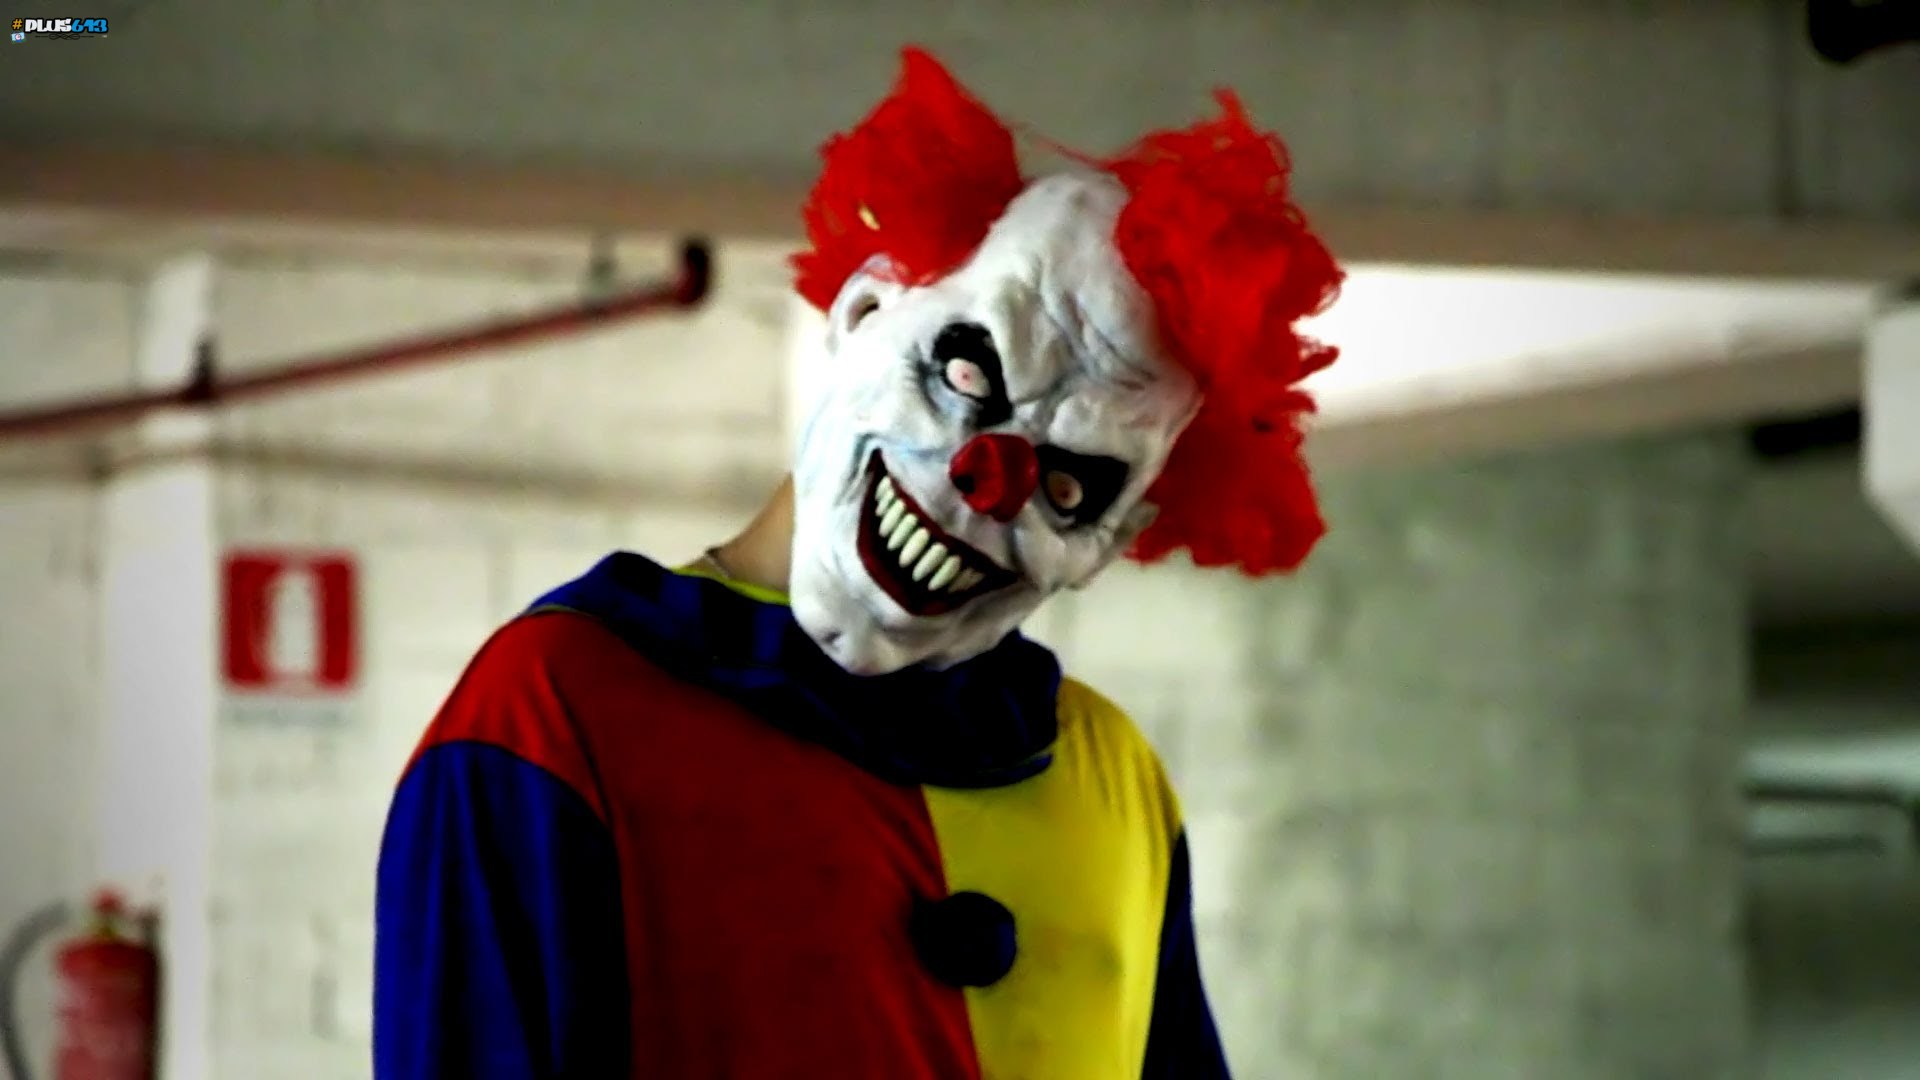 clown outbreak in US